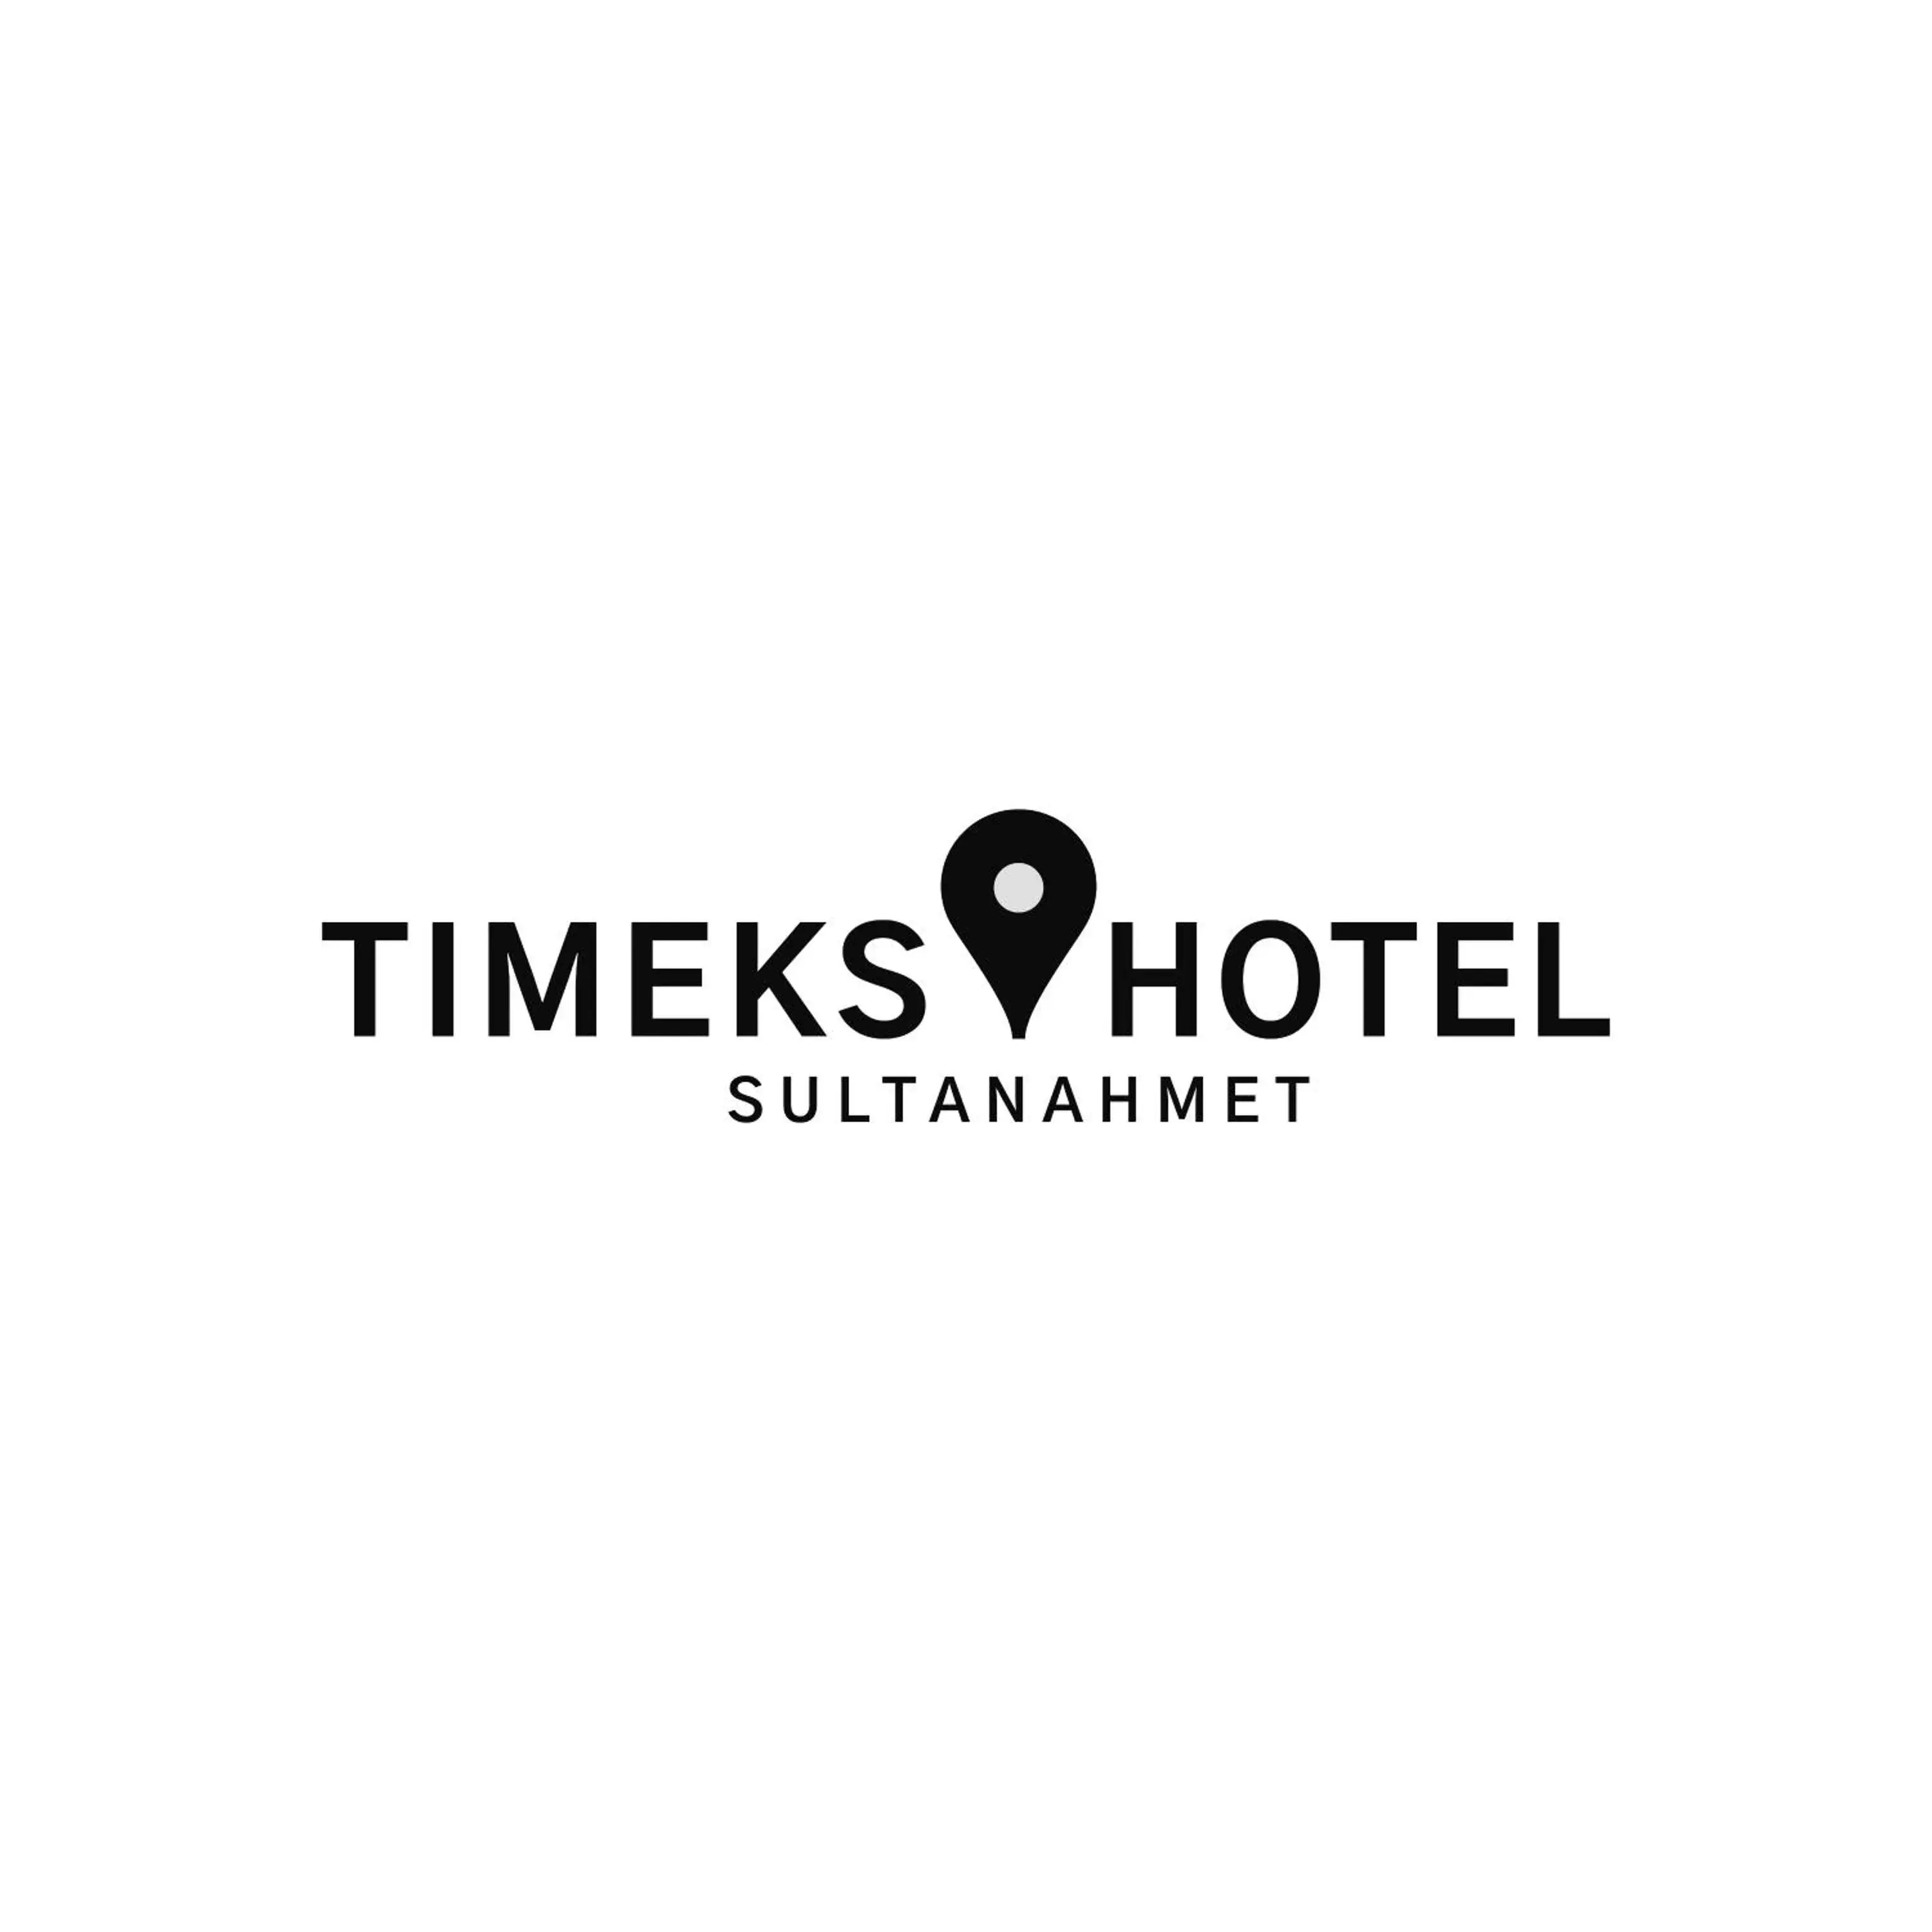 Property logo or sign in Timeks Hotel